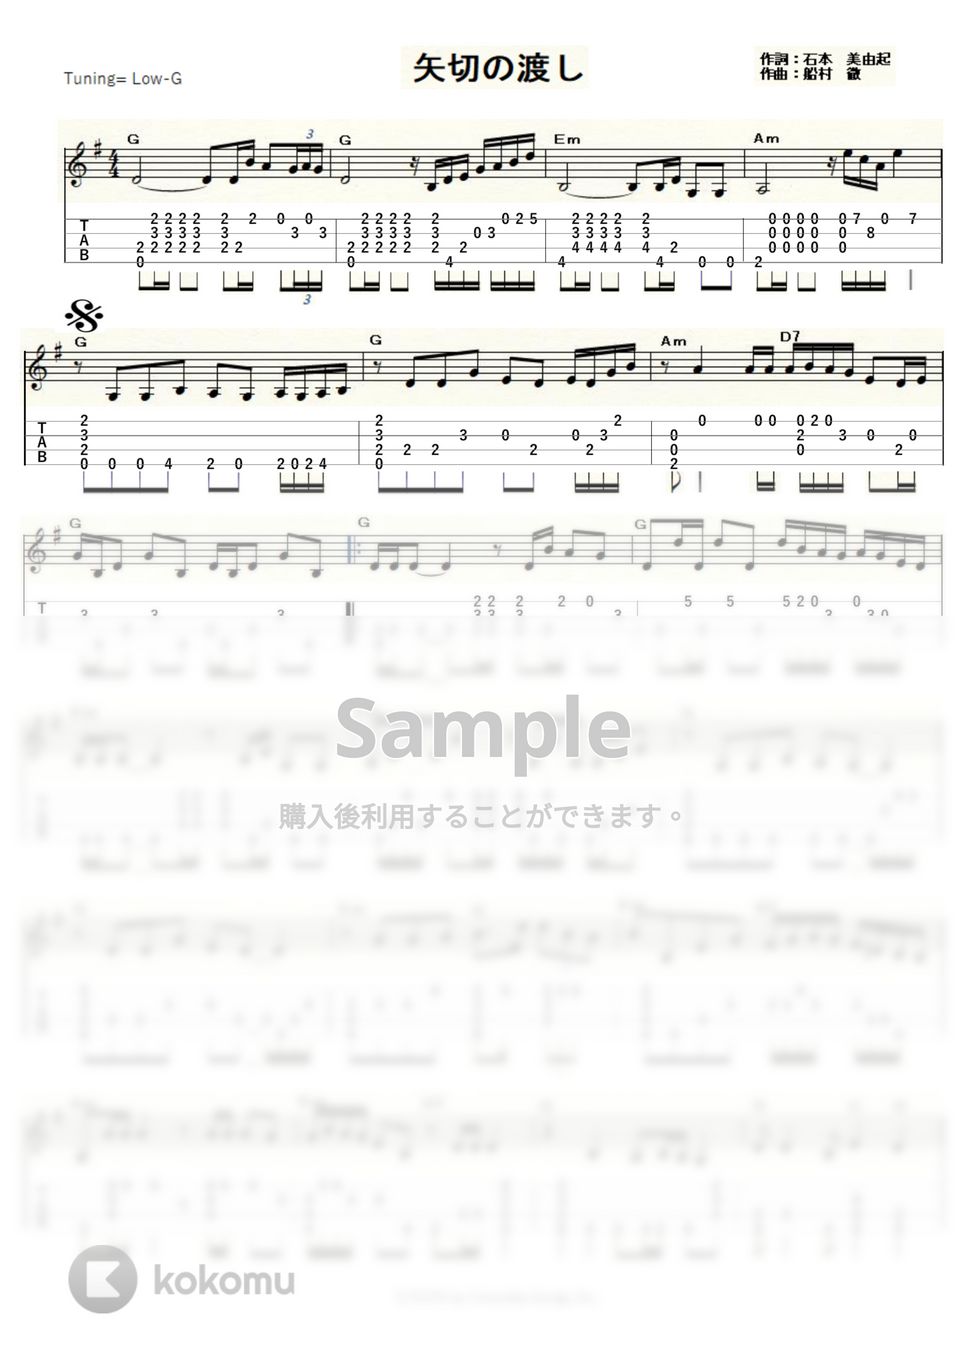 細川たかし - 矢切の渡し (ｳｸﾚﾚｿﾛ / Low-G / 中級) by ukulelepapa